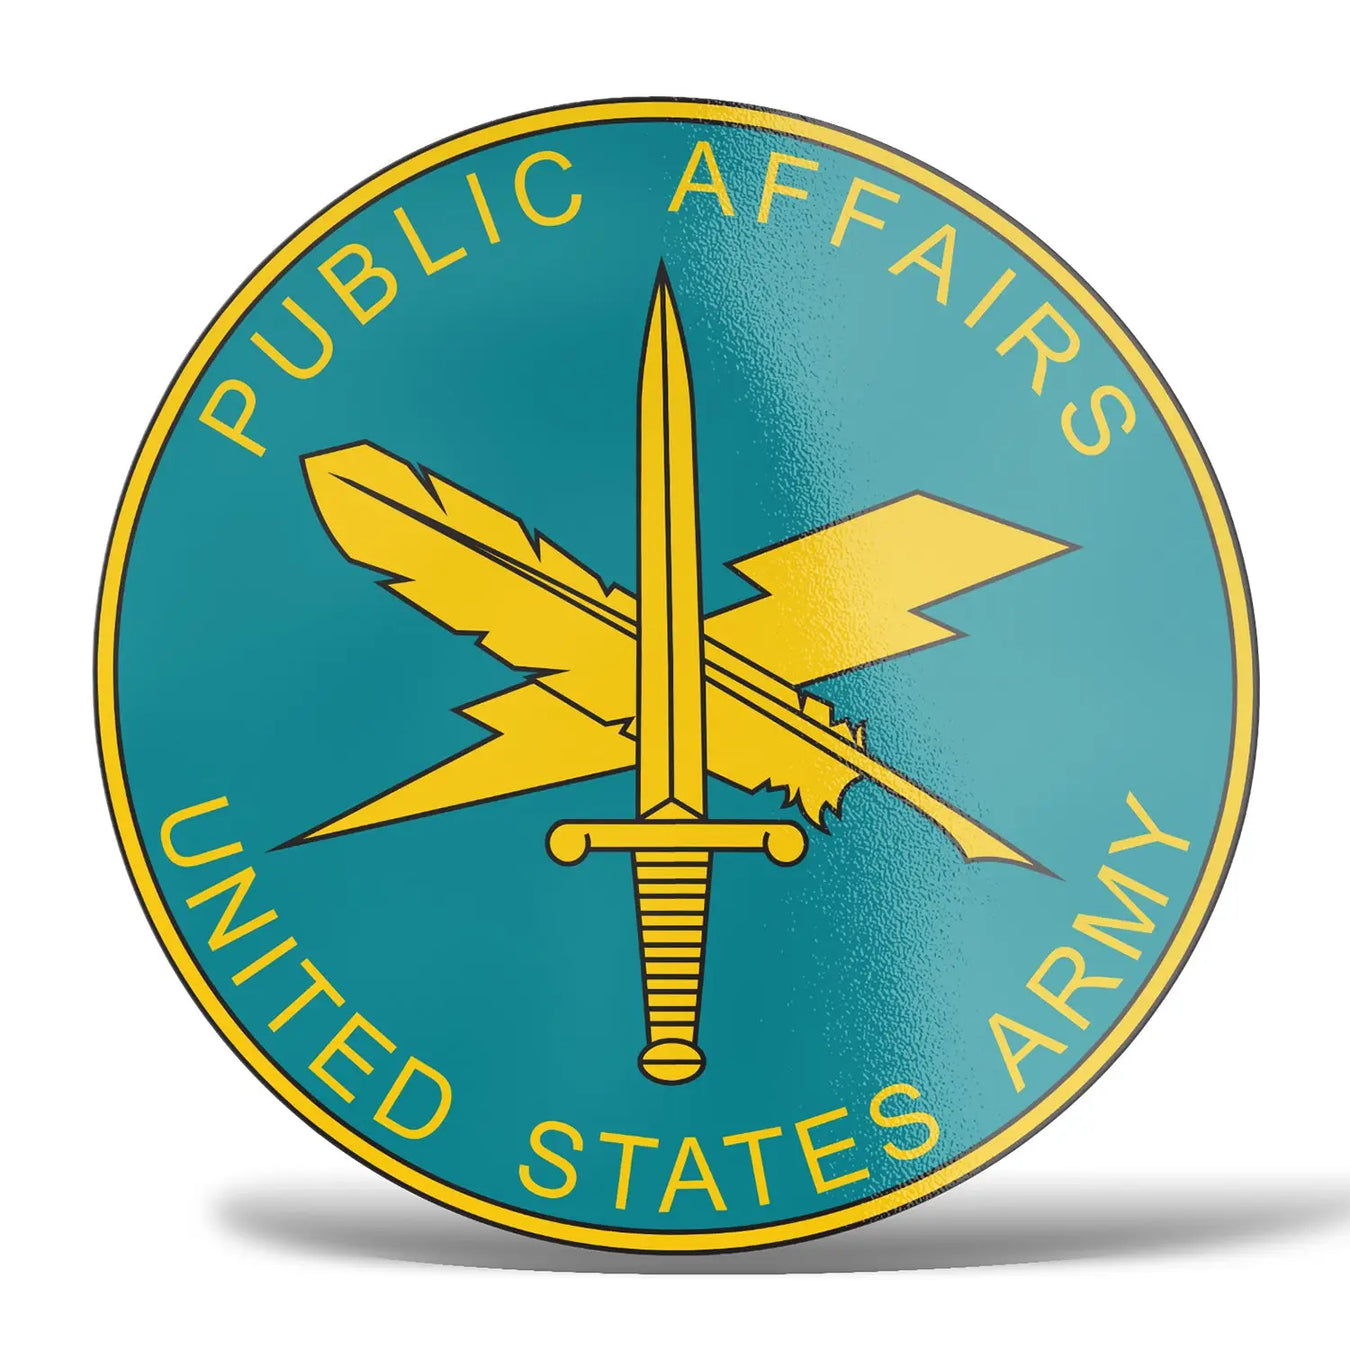 U.S. Army Public Affairs Decals